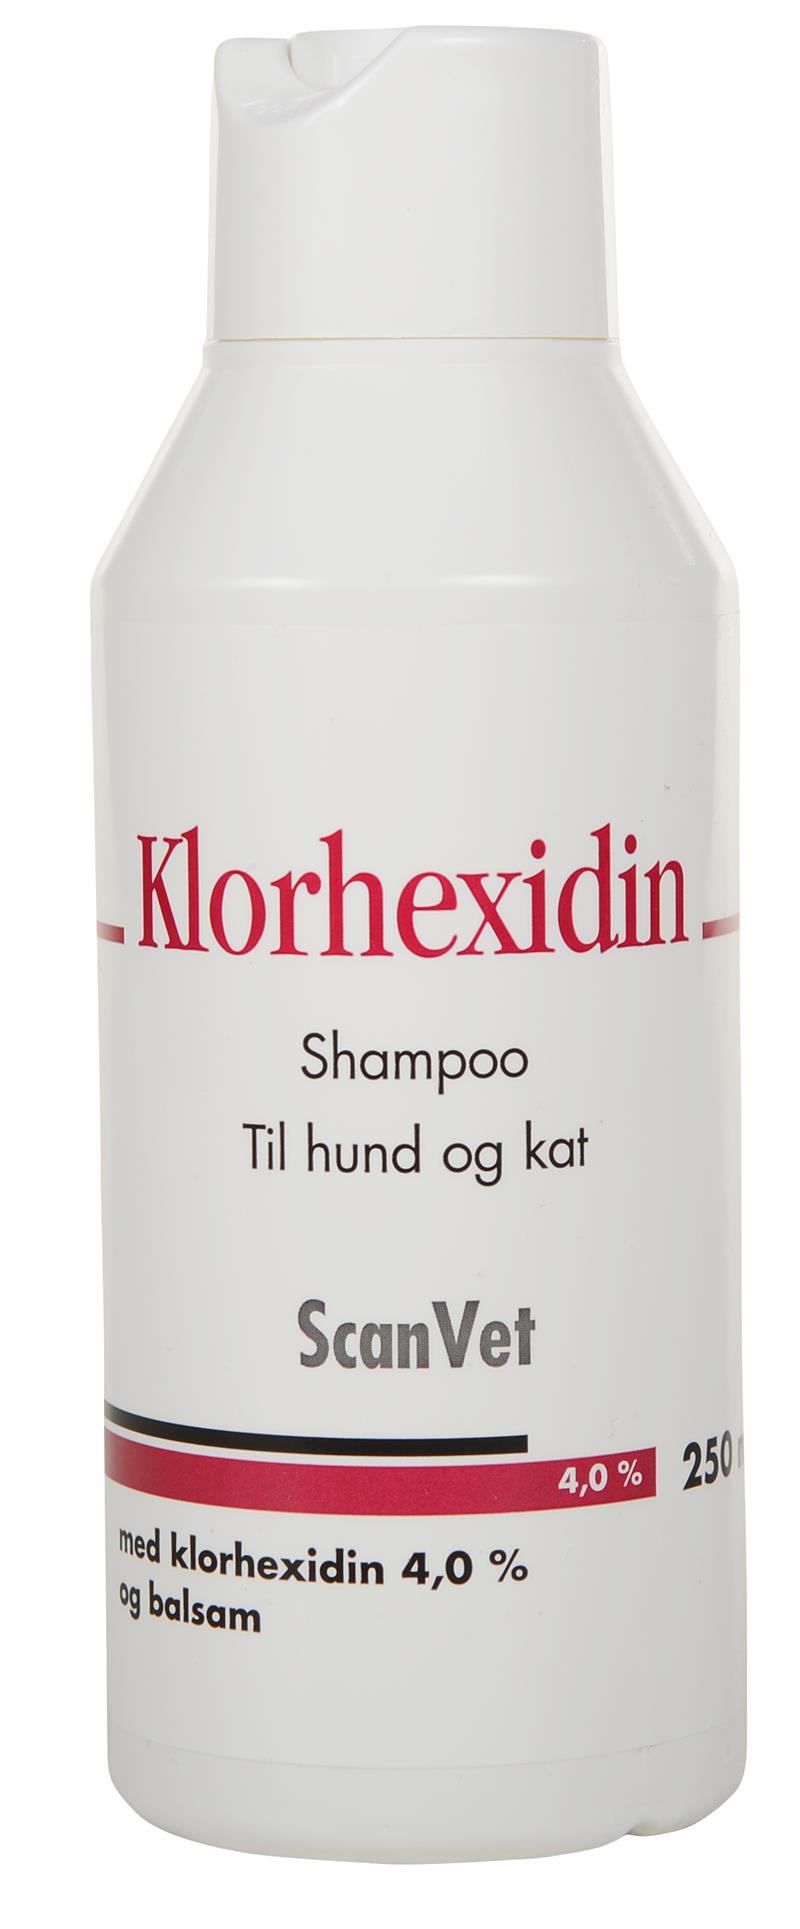 ScanVet, Shampoo med klorhexidin 4,0 %, til hund kat. ml